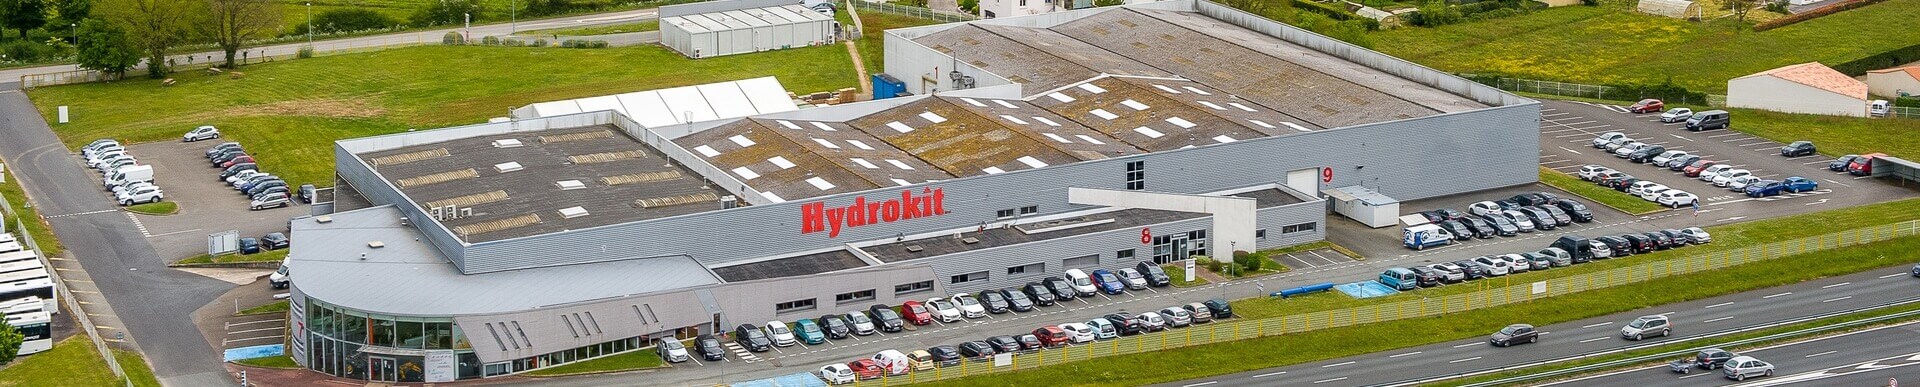 Rencontrez Hydrokit tout au long de l'année 2019